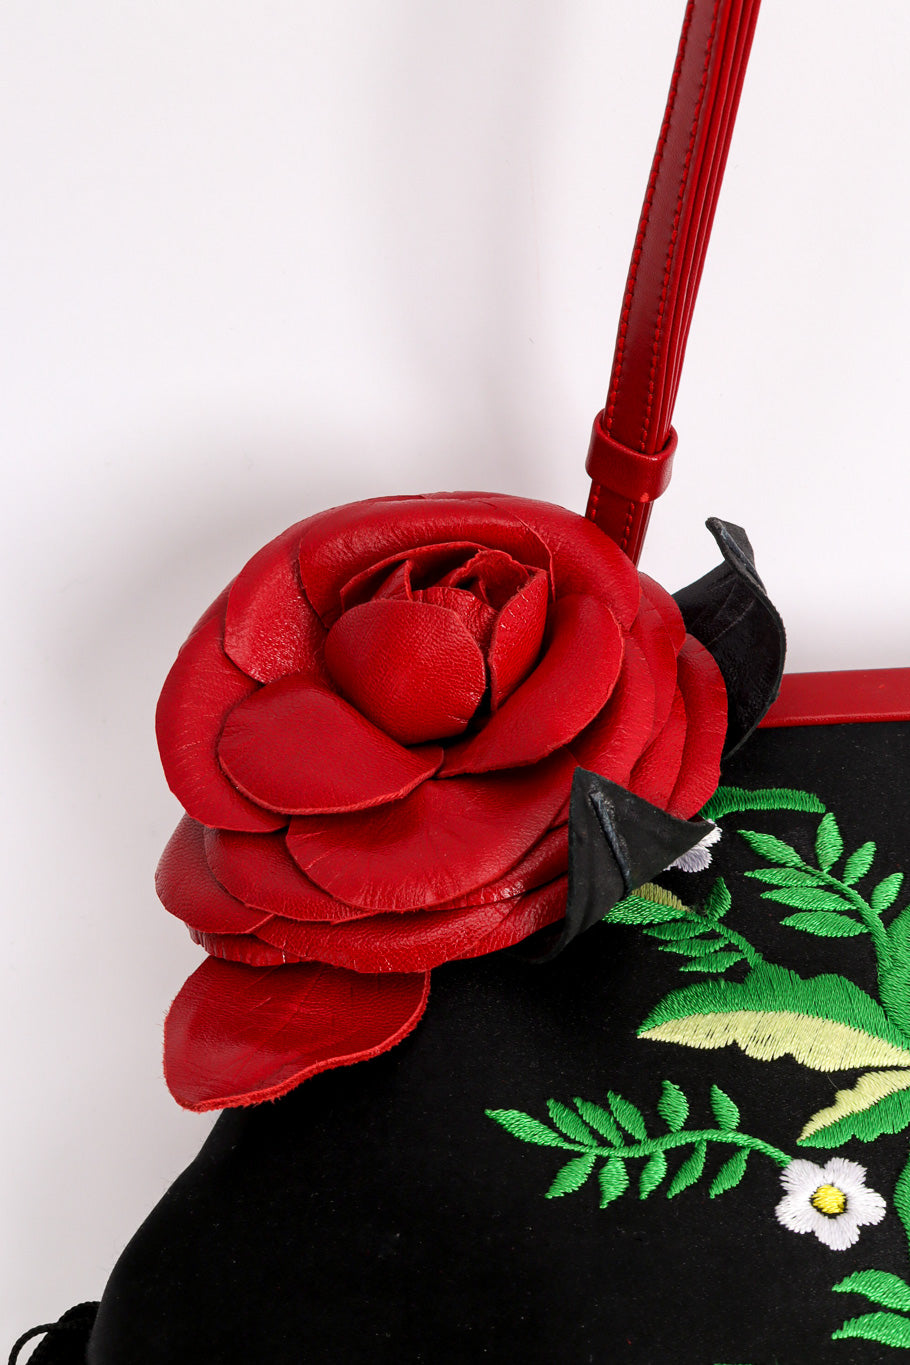 Vintage Moschino Embroidered Floral Fringe Shoulder Bag rose decal @recessla